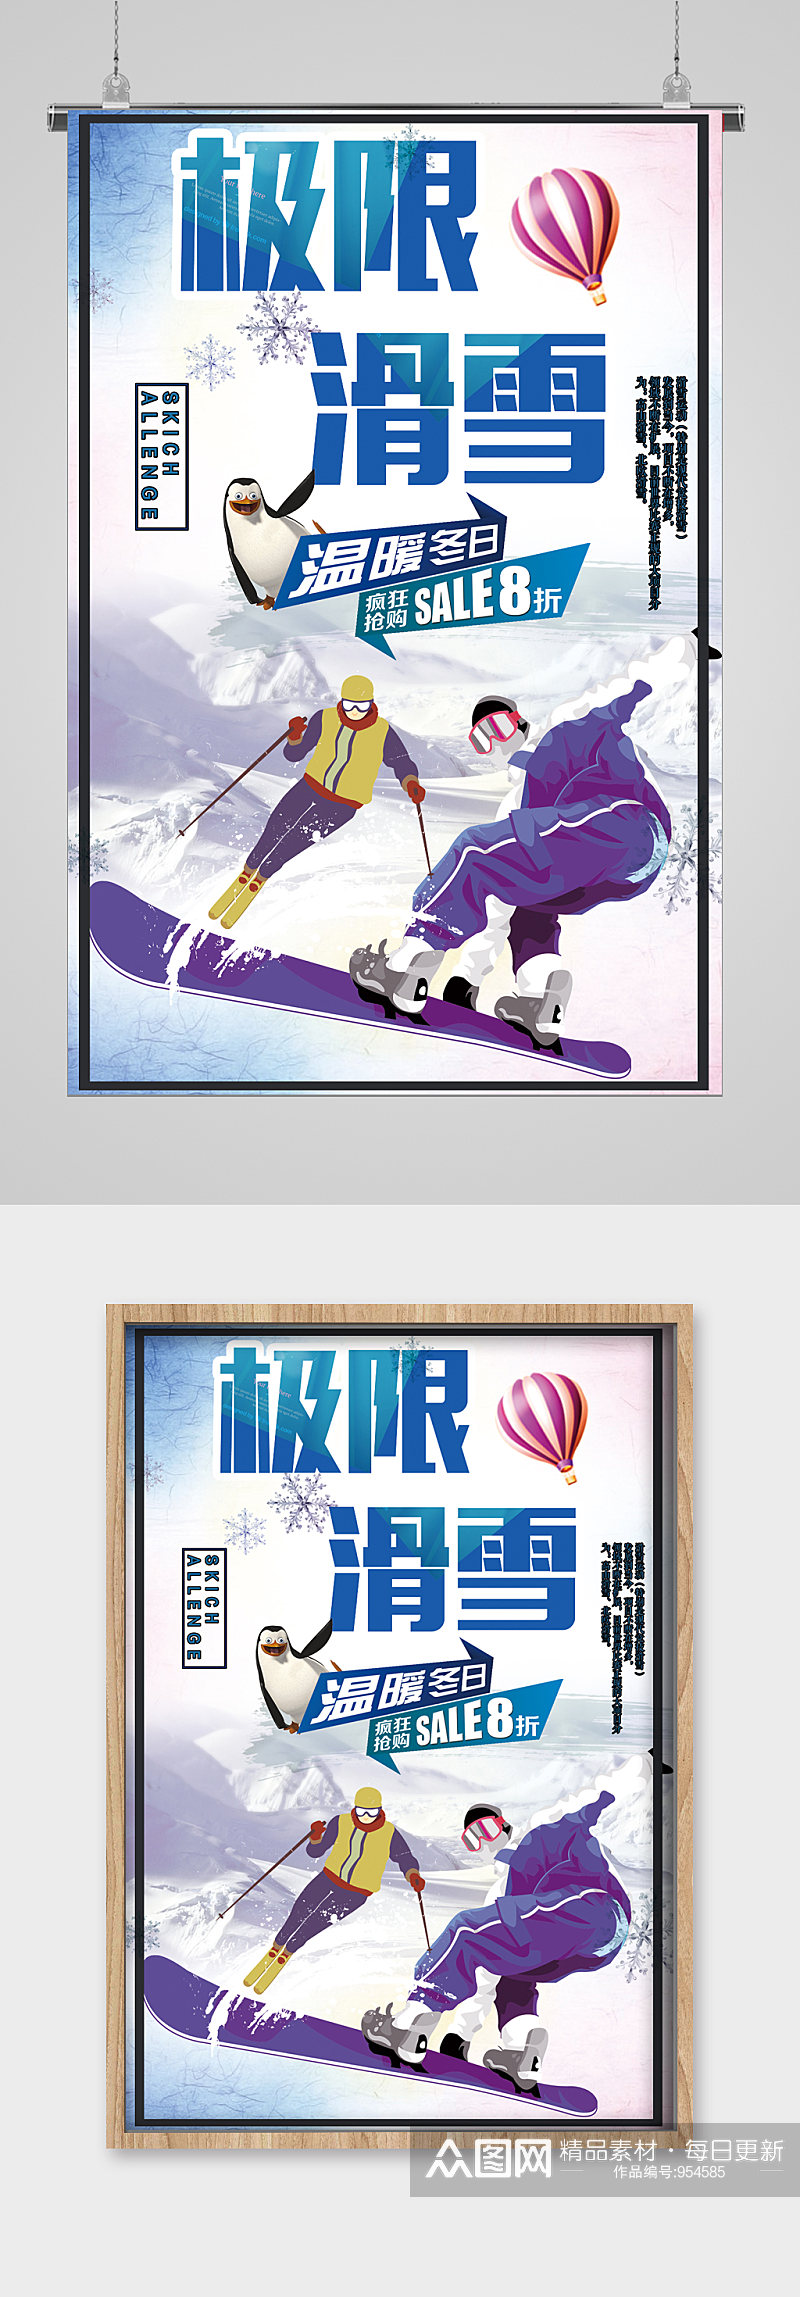 冬季滑雪极限运动宣传海报素材